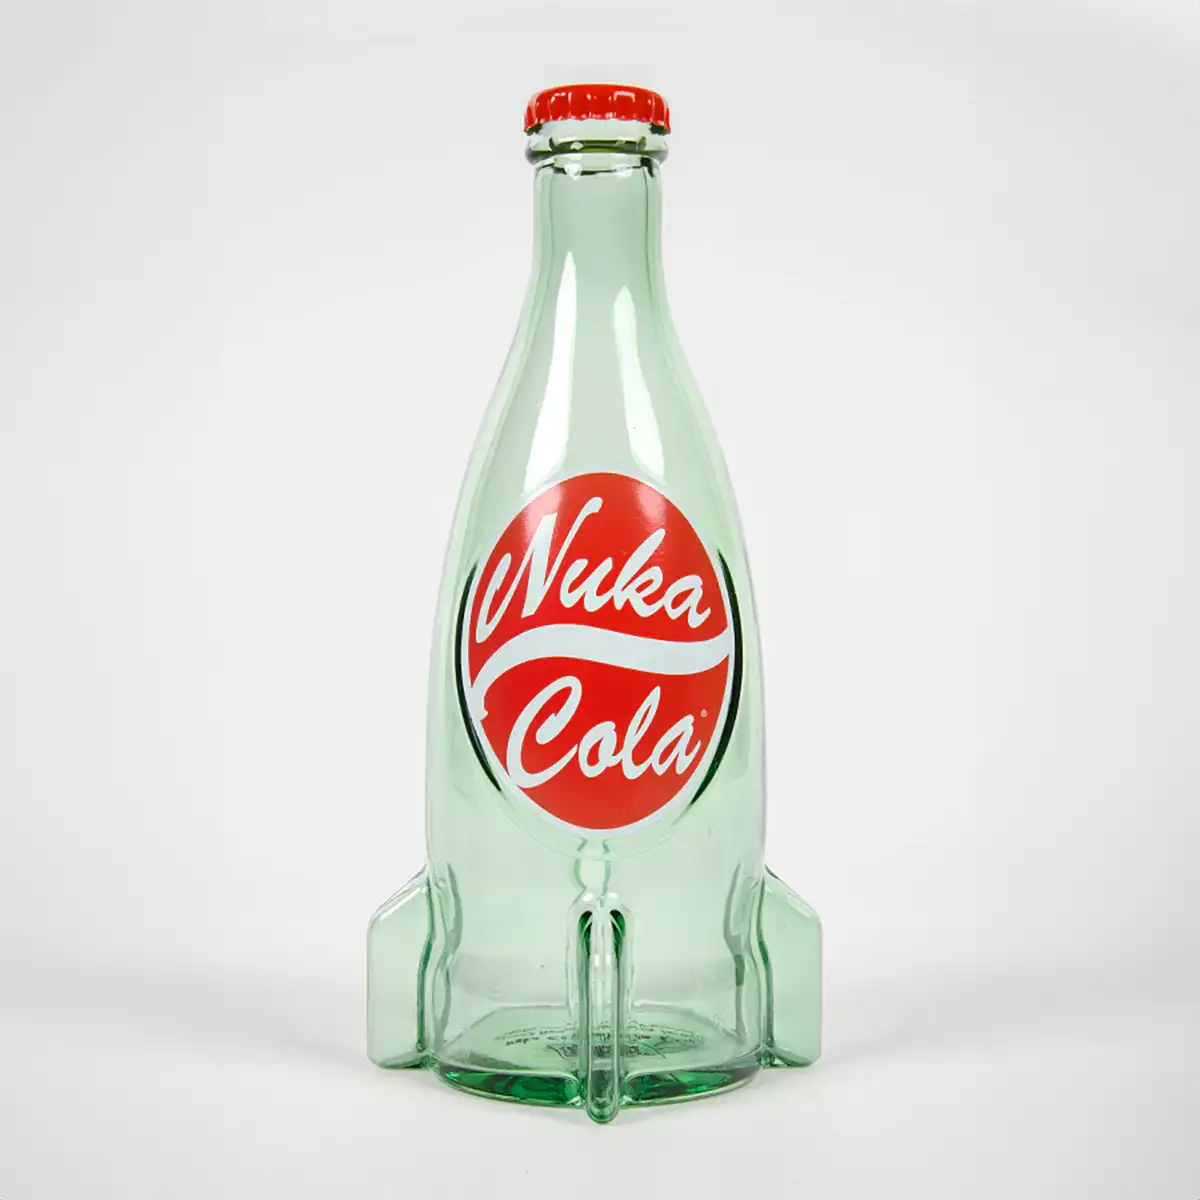 Fallout "Nuka Cola" Glasflasche und Kronkorken Image 4